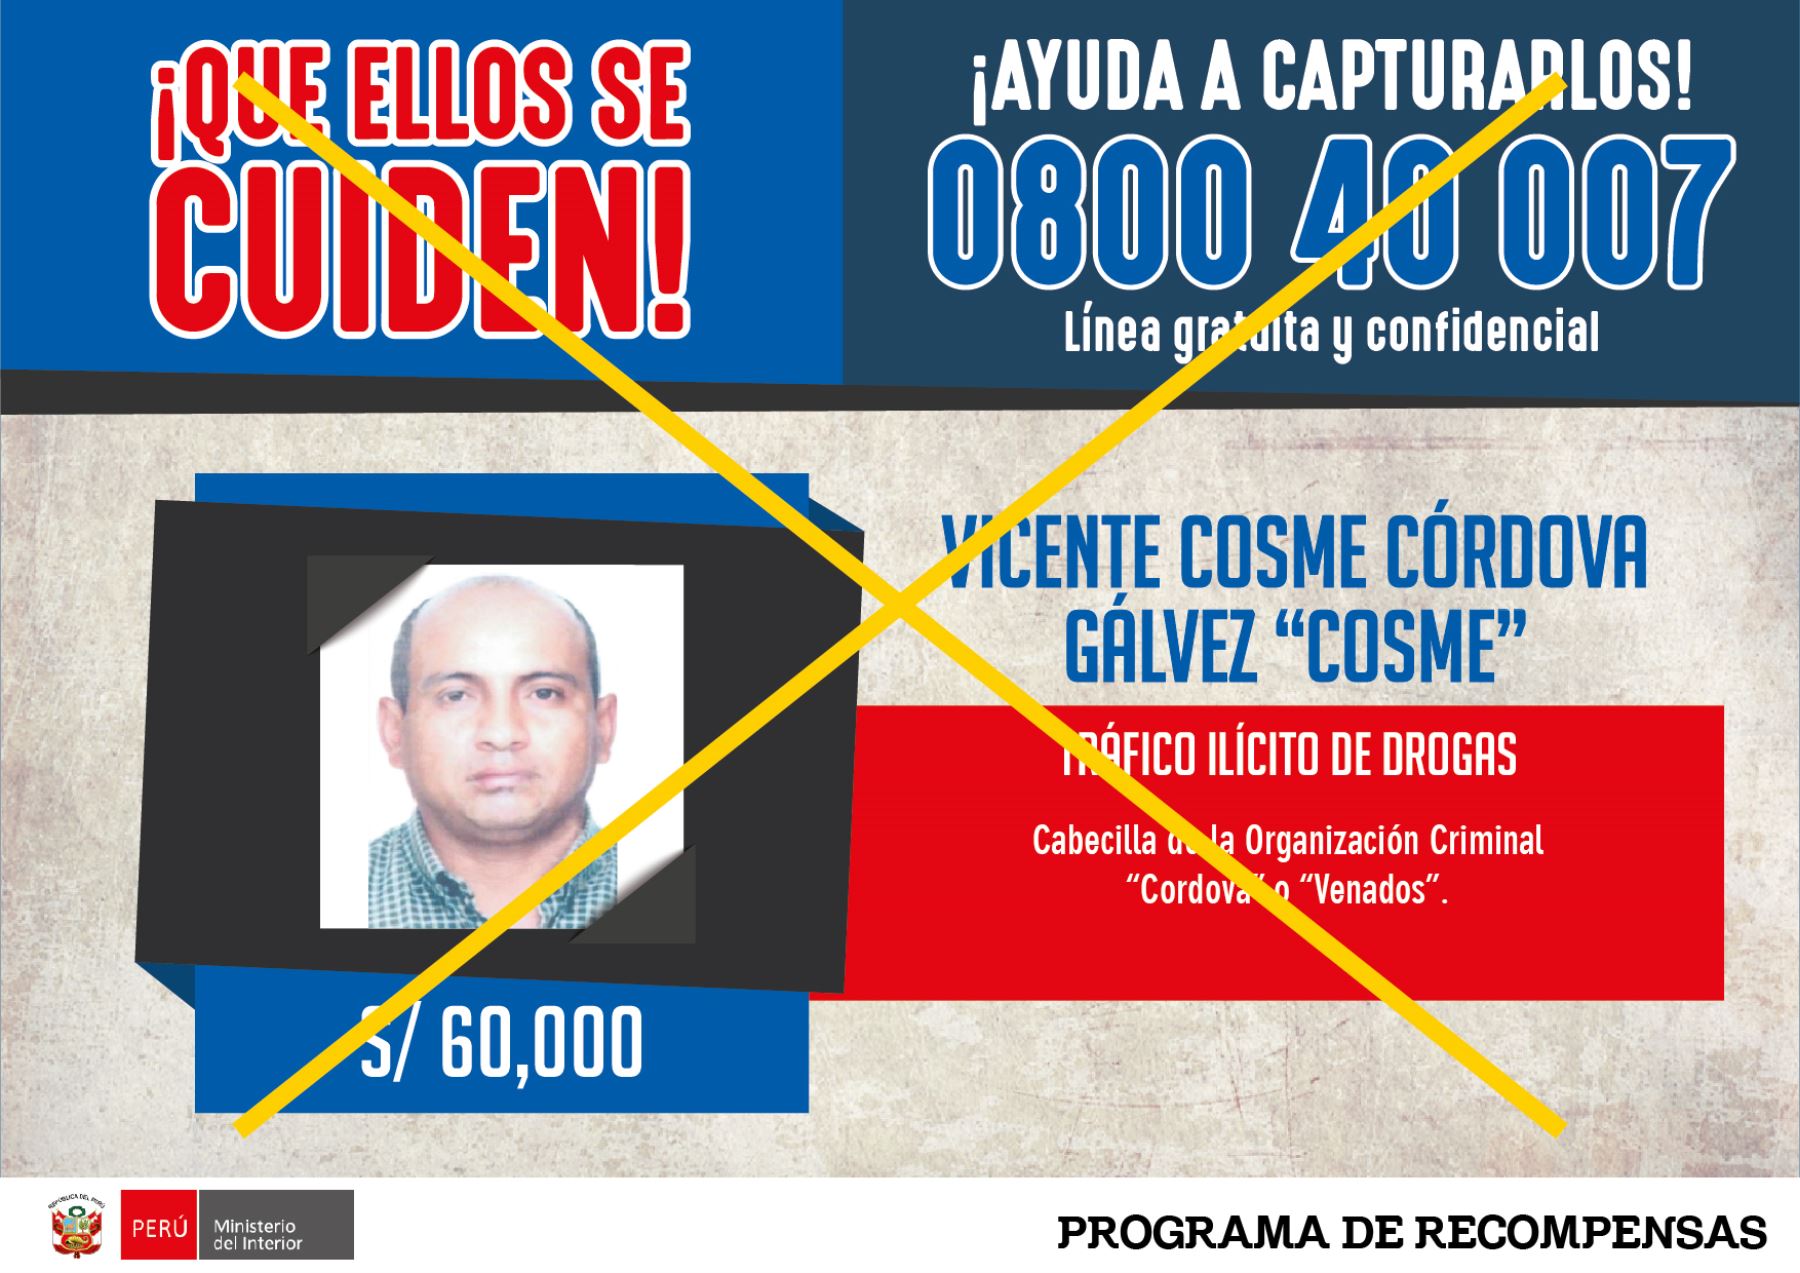 Vicente Cosme Córdova Gálvez, alias “Cosme”, cabecilla de la organización criminal de tráfico ilícito de drogas “Los venados”. Foto: Difusión